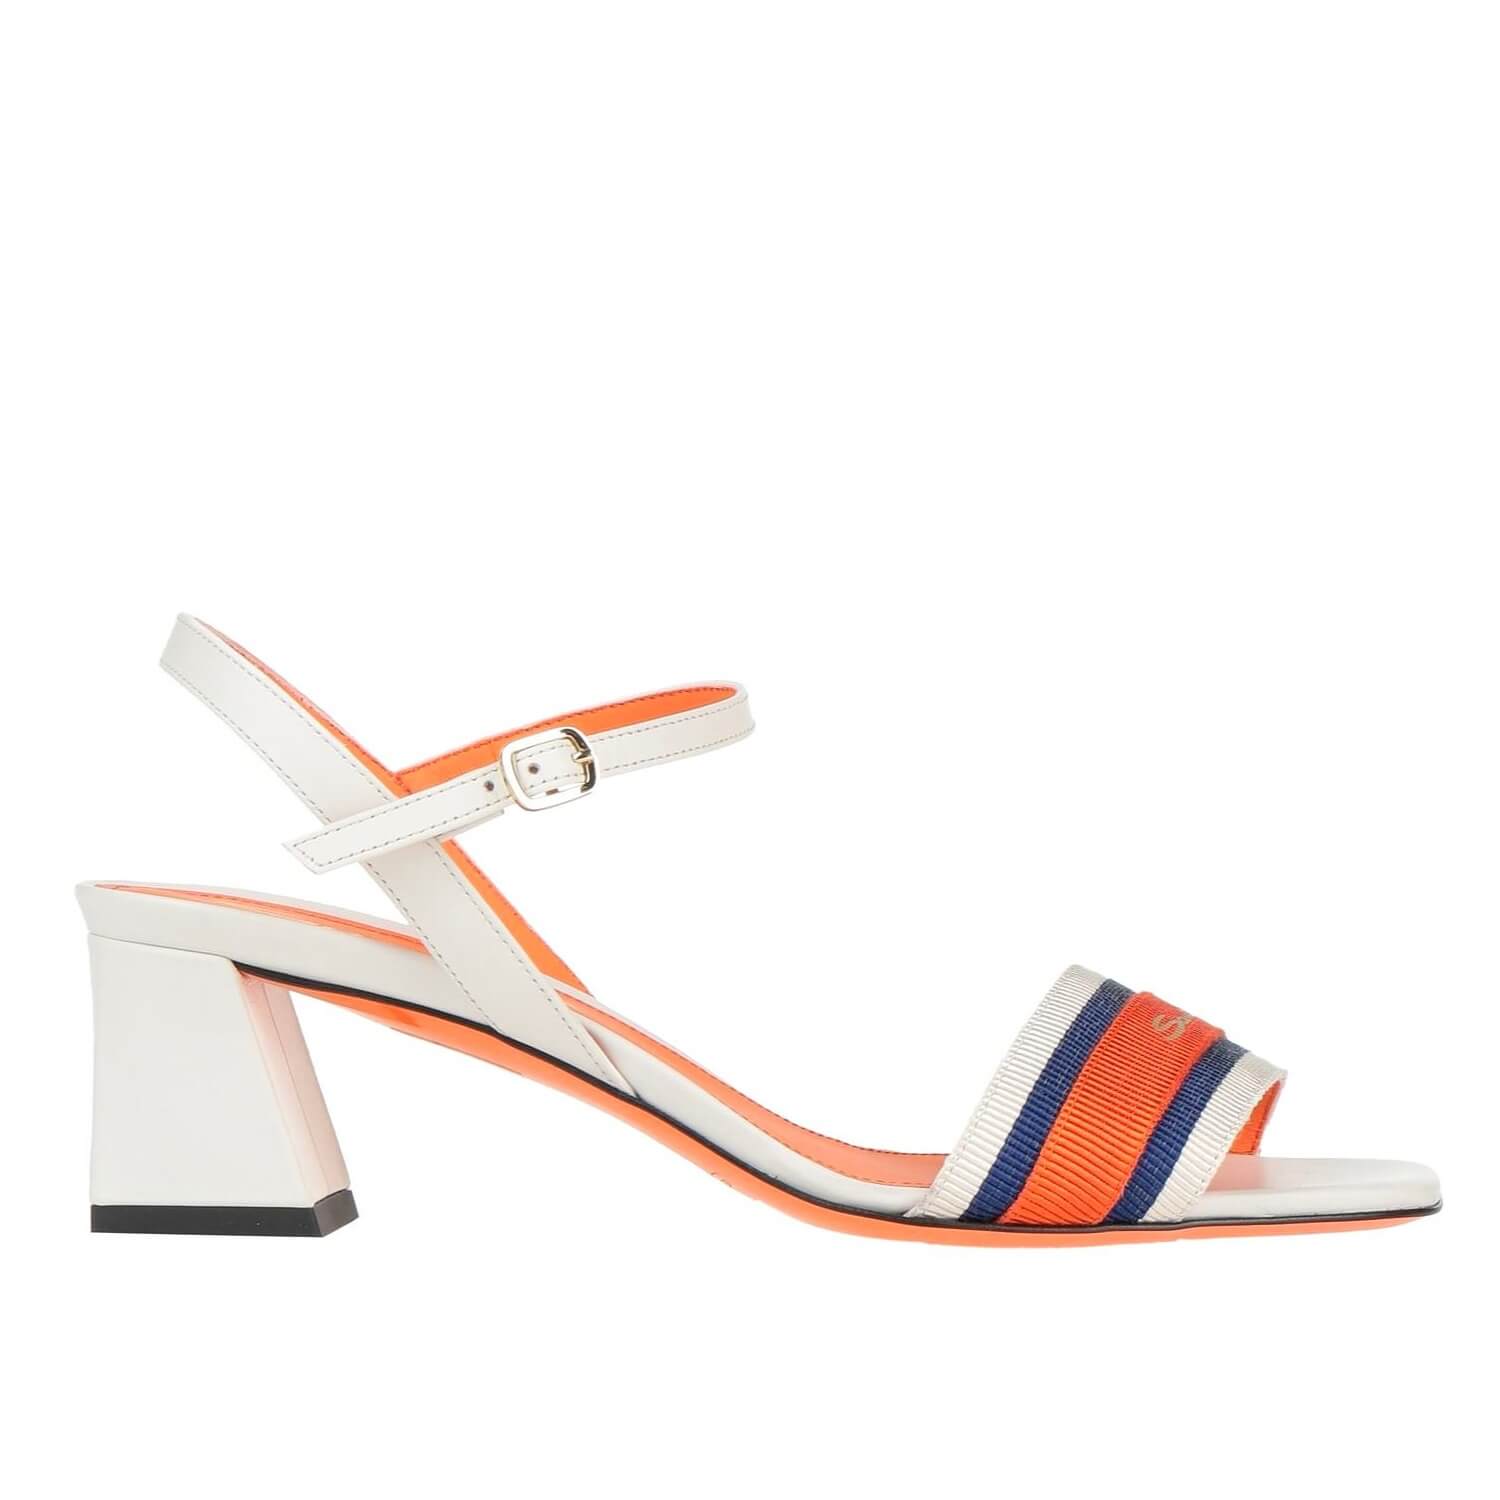 Босоножки Santoni, белый/синий/оранжевый женские мокасины из натуральной кожи на квадратном каблуке